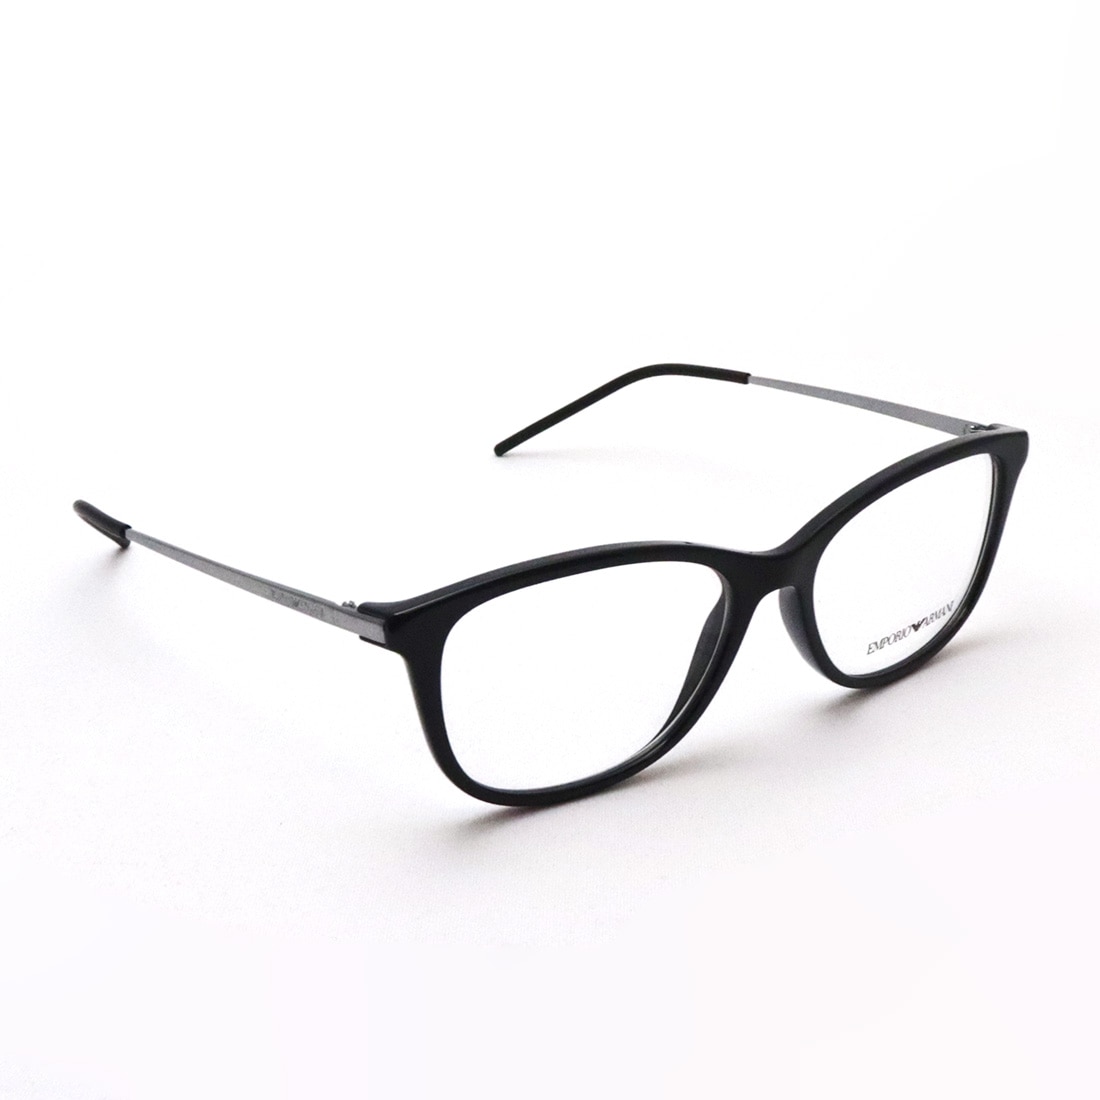 【一番人気】23293 エンポリオアルマーニ EA3155 ブラック 黒縁メガネ 眼鏡 小物